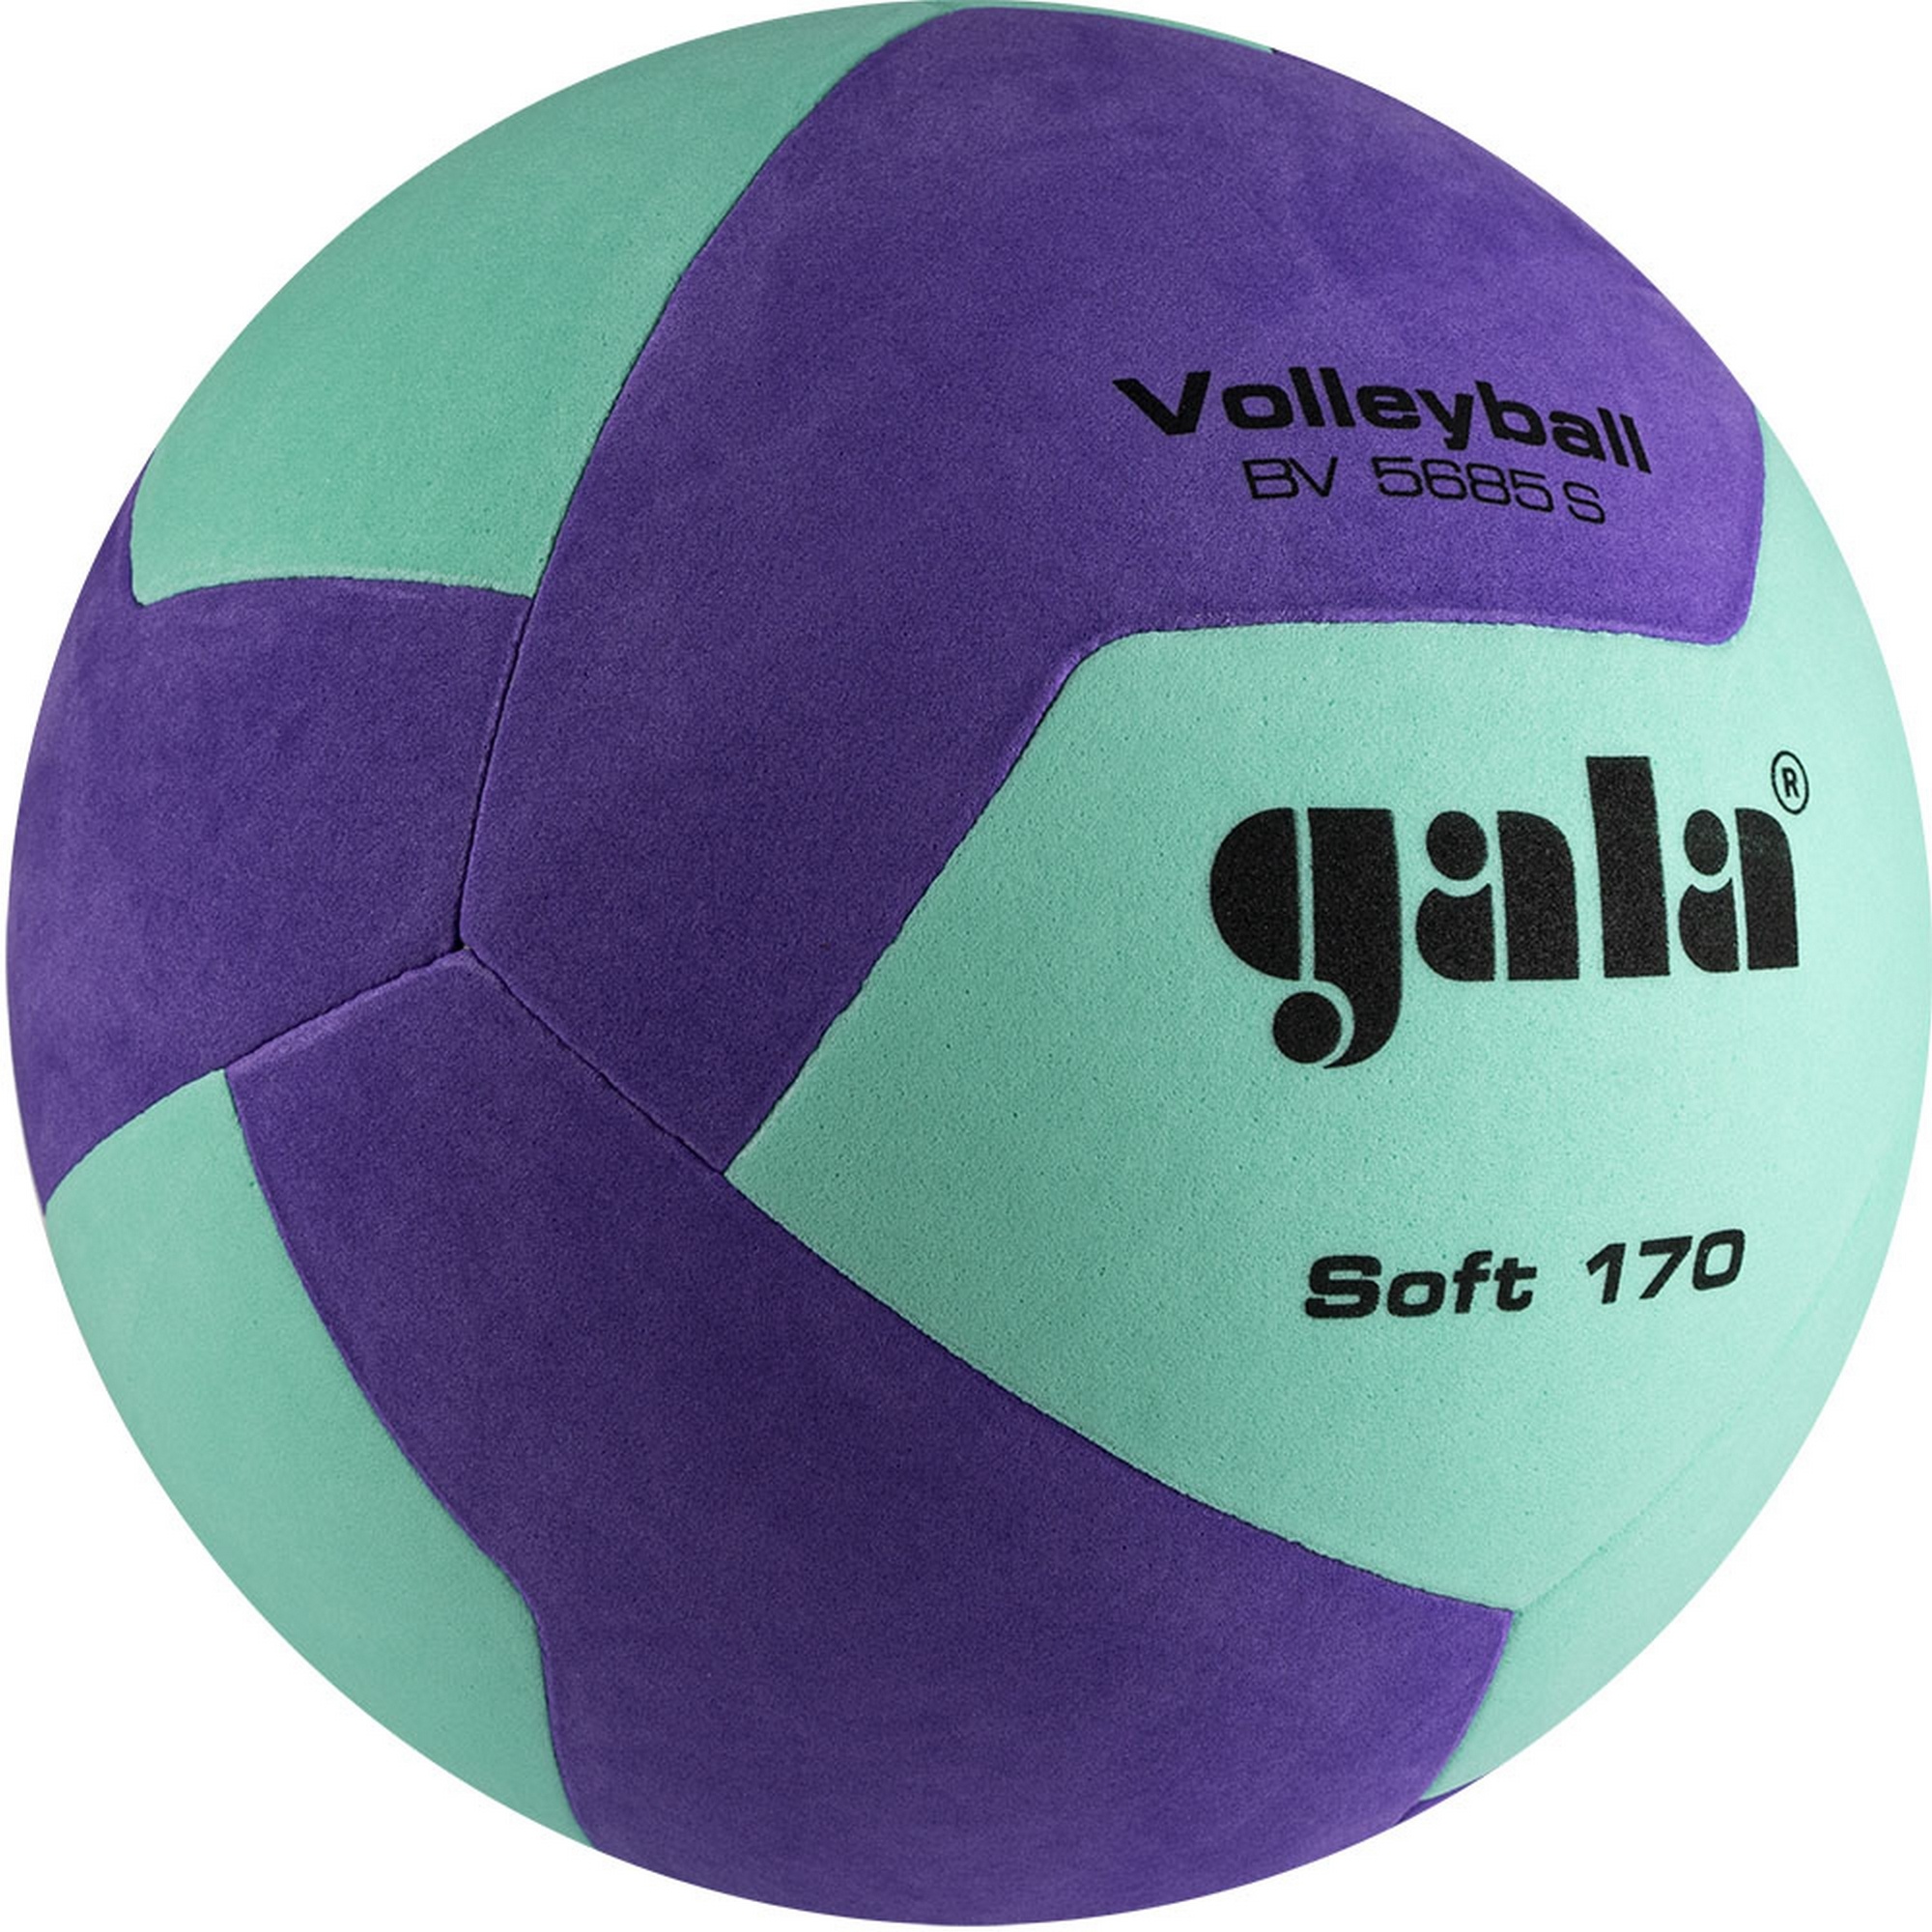 Мяч волейбольный Gala Soft 170, 12 BV5685SCF р.5 2000_2000